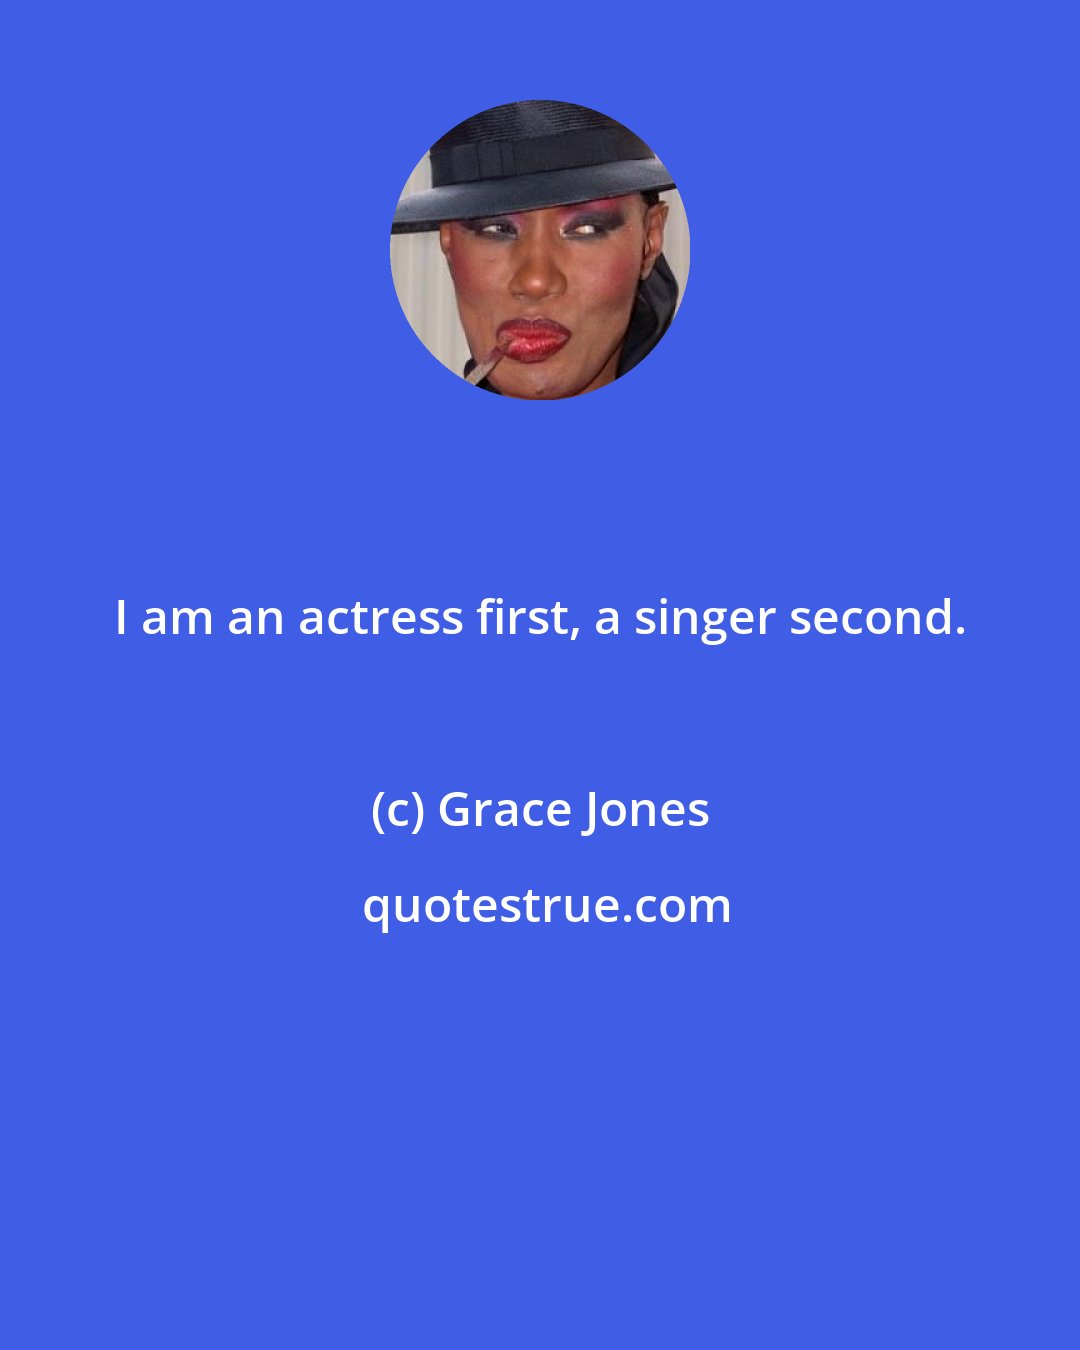 Grace Jones: I am an actress first, a singer second.